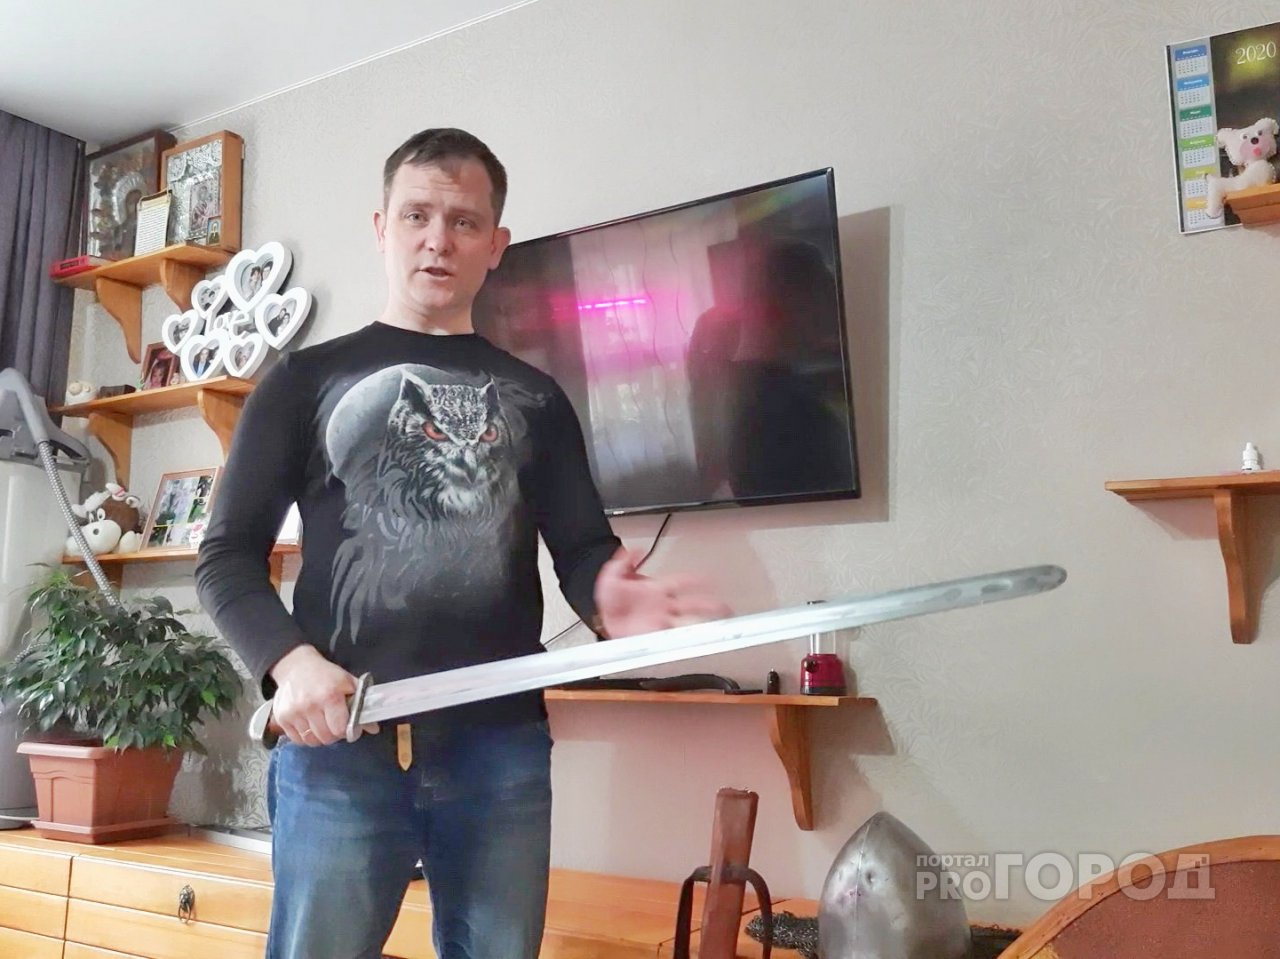 Фельдшер из Новочебоксарска после спасения людей бьется на мечах и кует кольчугу